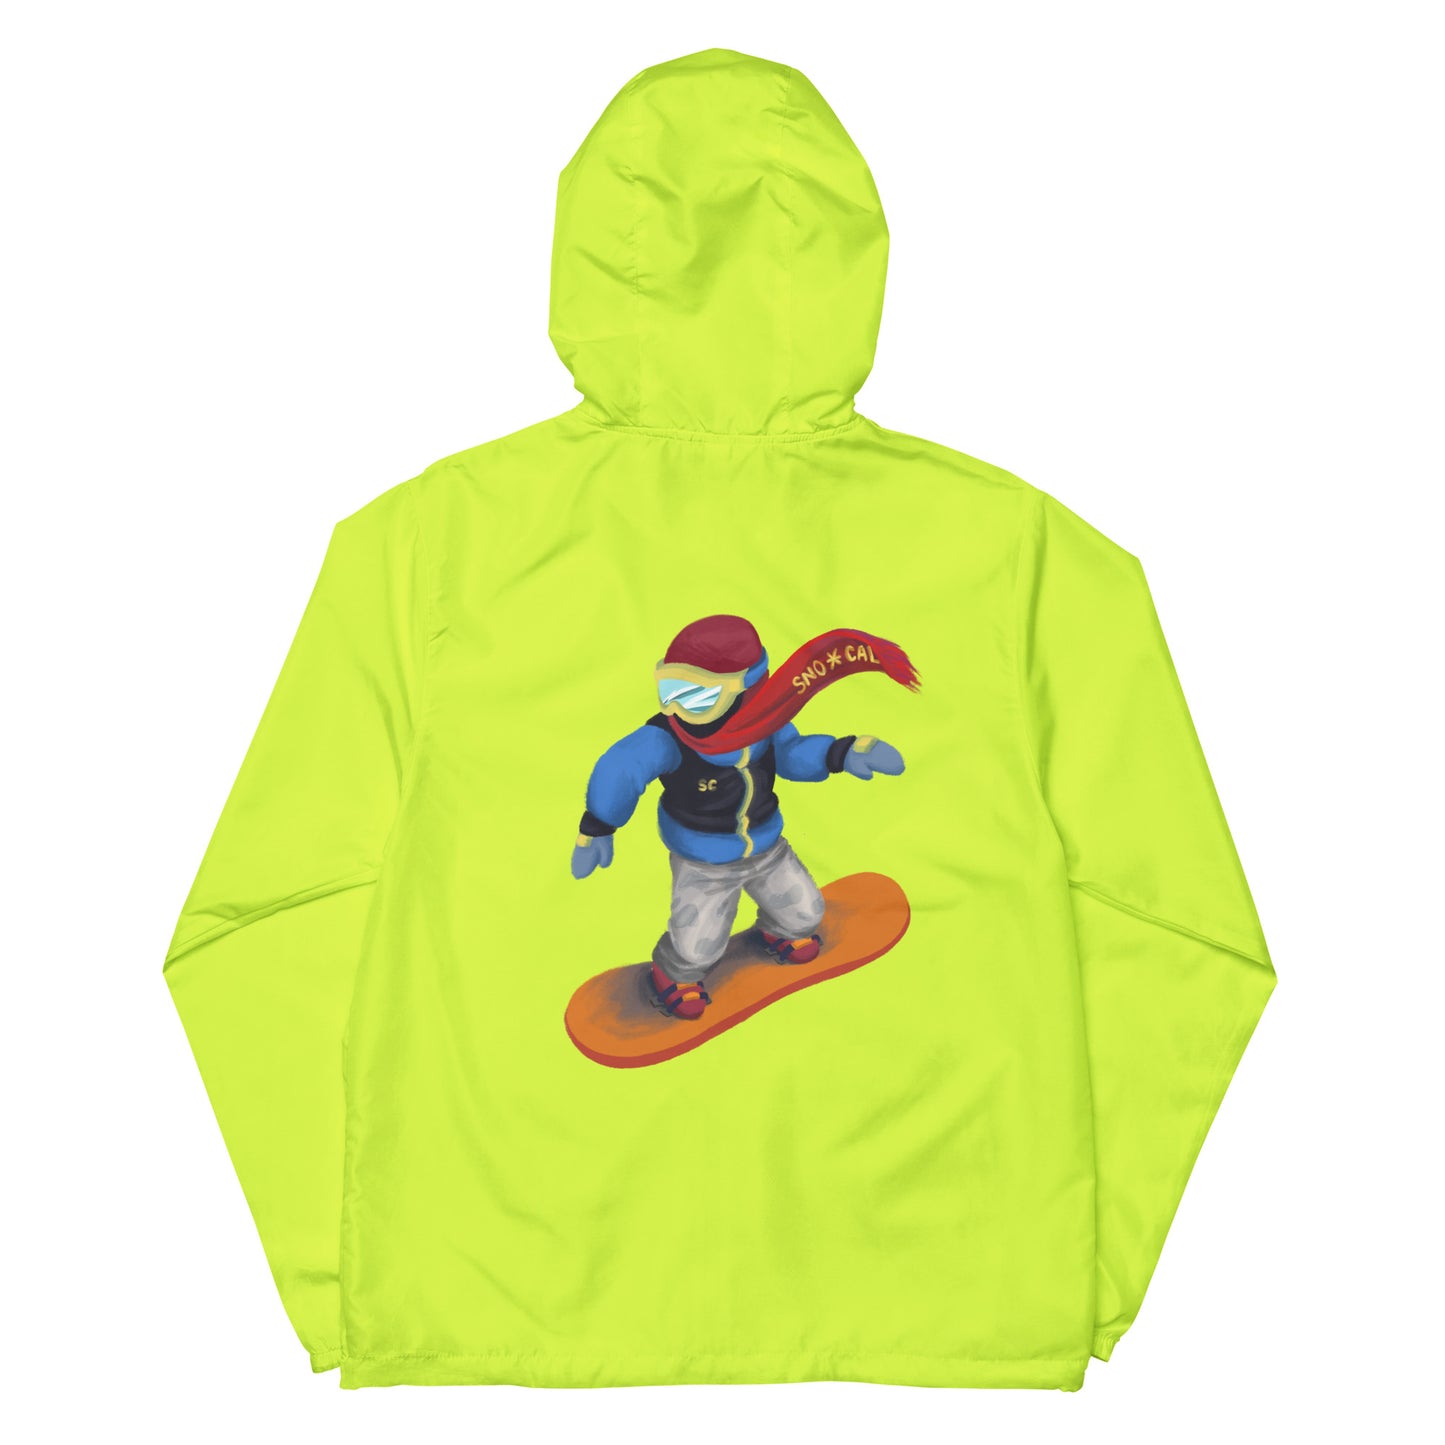 neon yellow snowboard emoji hoodie